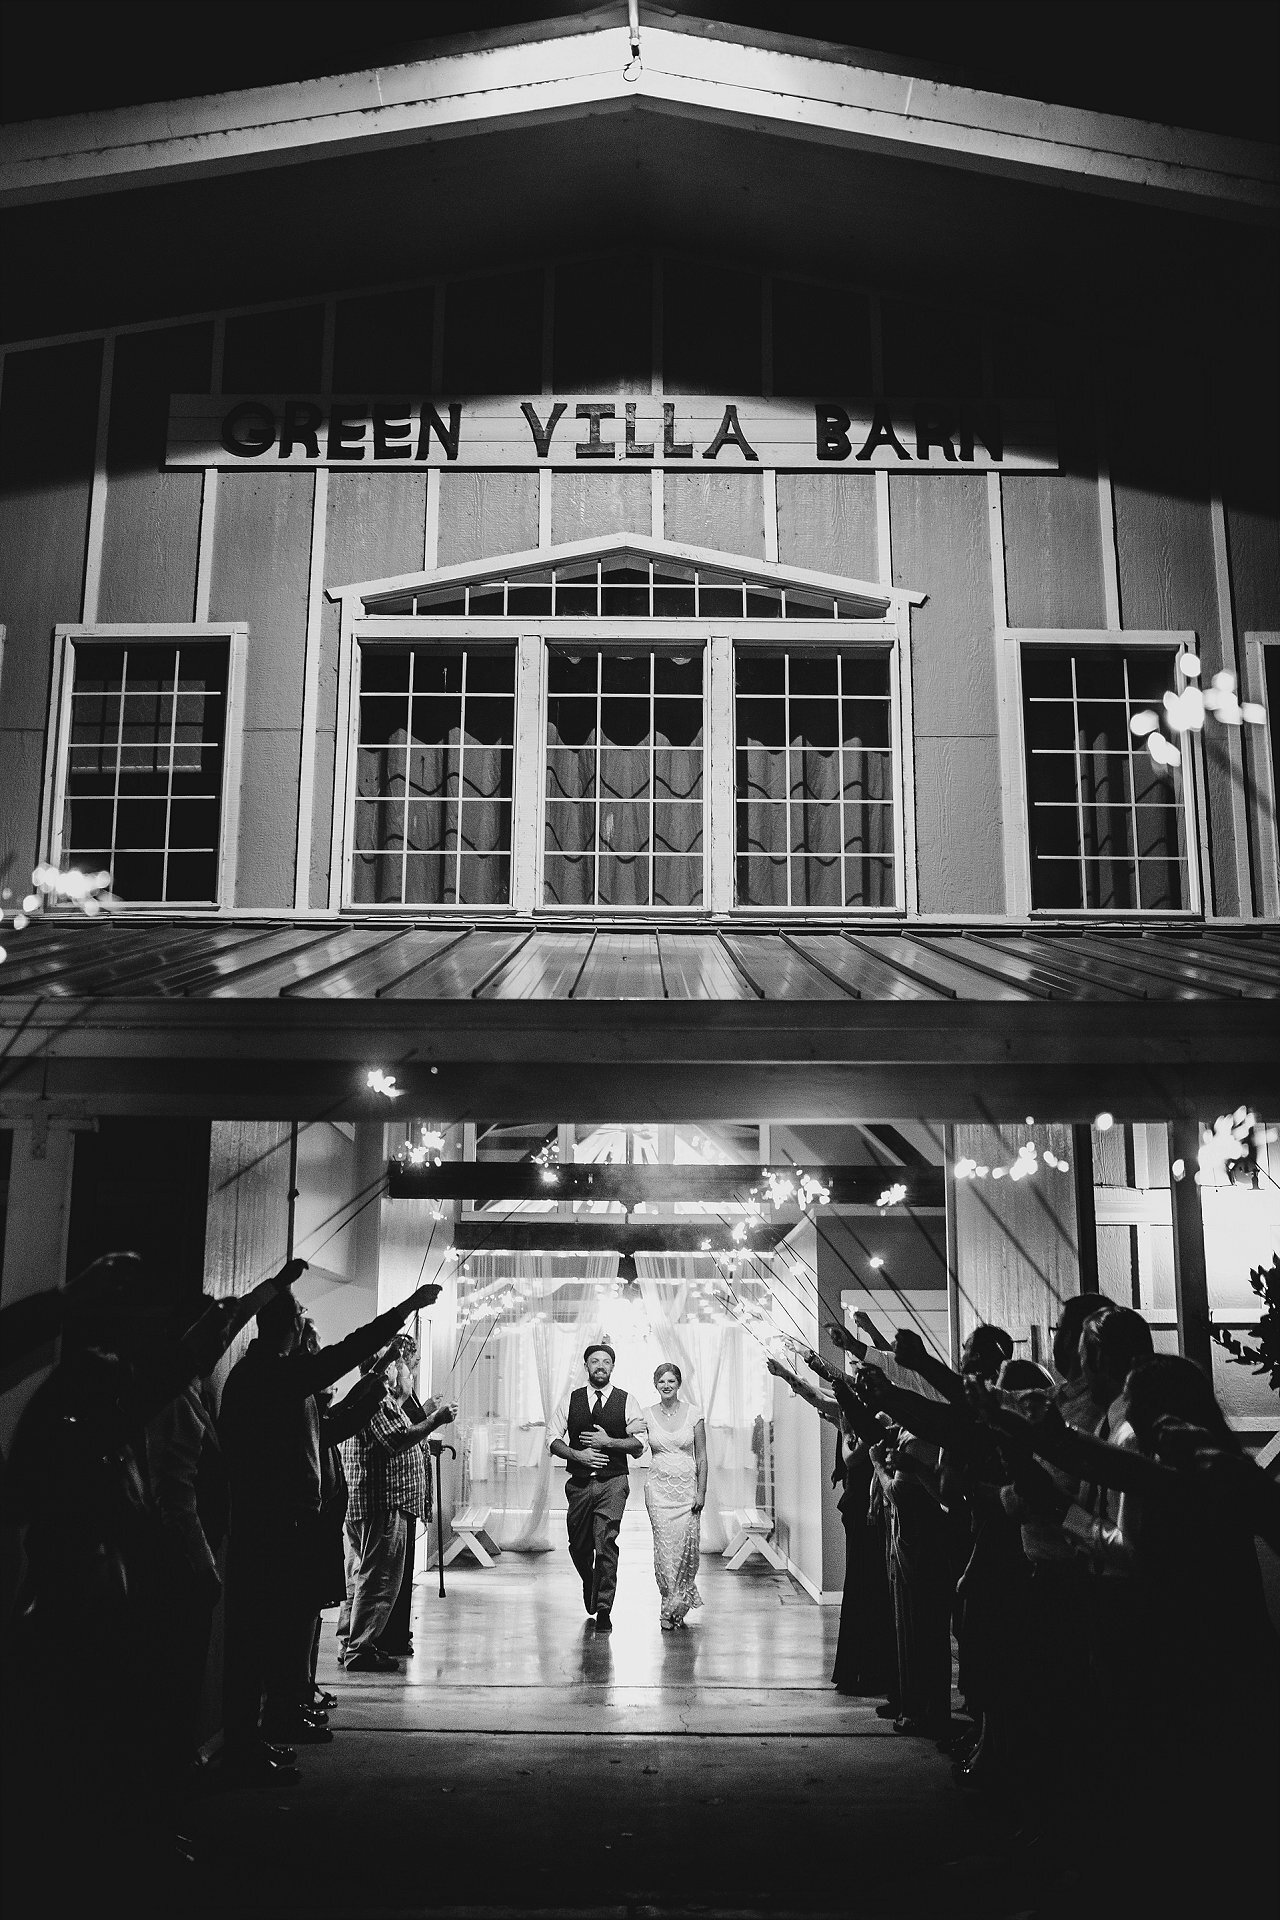 Green Villa Barn Wedding Photos